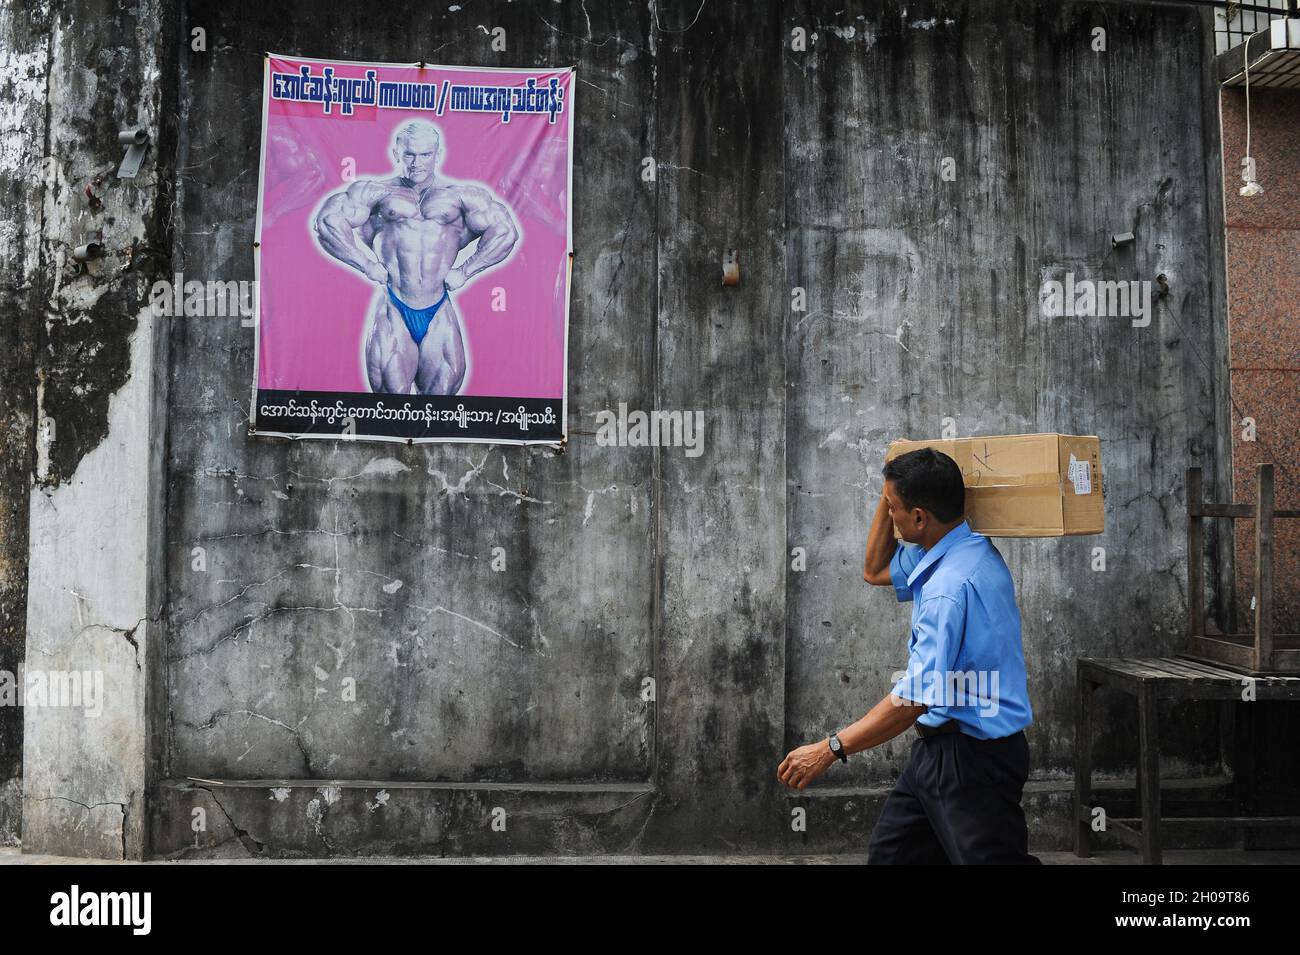 '11.10.2013, Myanmar, , Yangon - Ein Paketdienstleister trägt ein Paket auf seiner Schulter und geht mit einem Plakat, das einen Bodybuilding-Abend anwirbt, an einer Wand vorbei Stockfoto